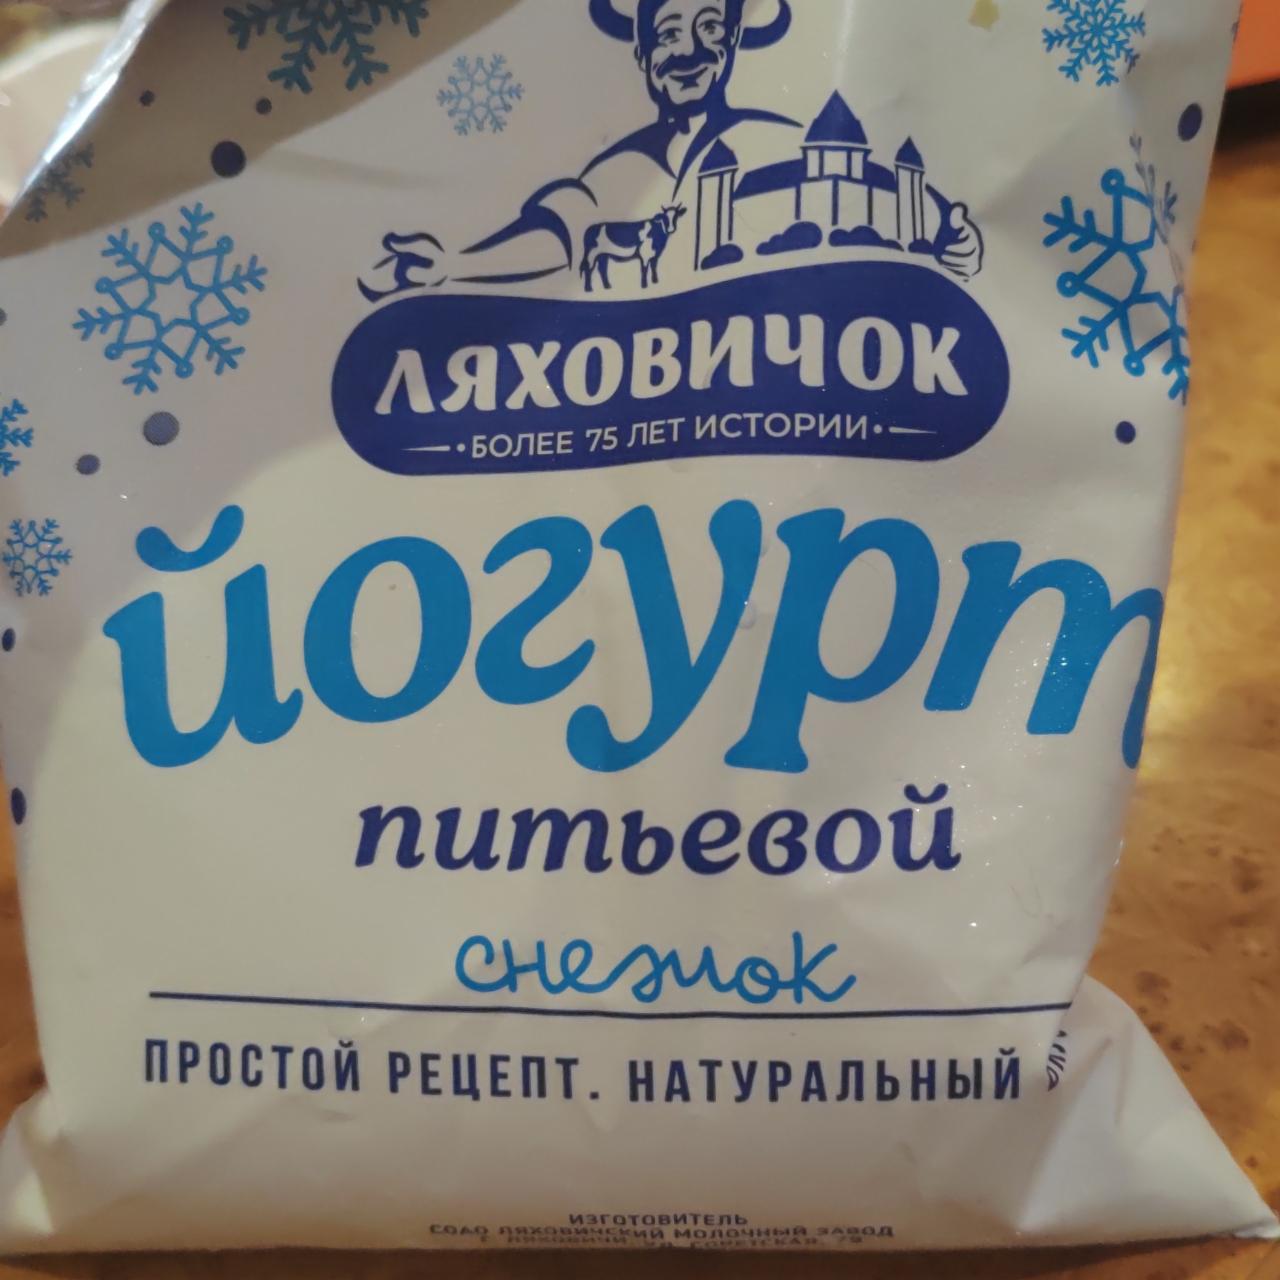 Фото - Йогурт питьевой Снежок 2.1% Ляховичок